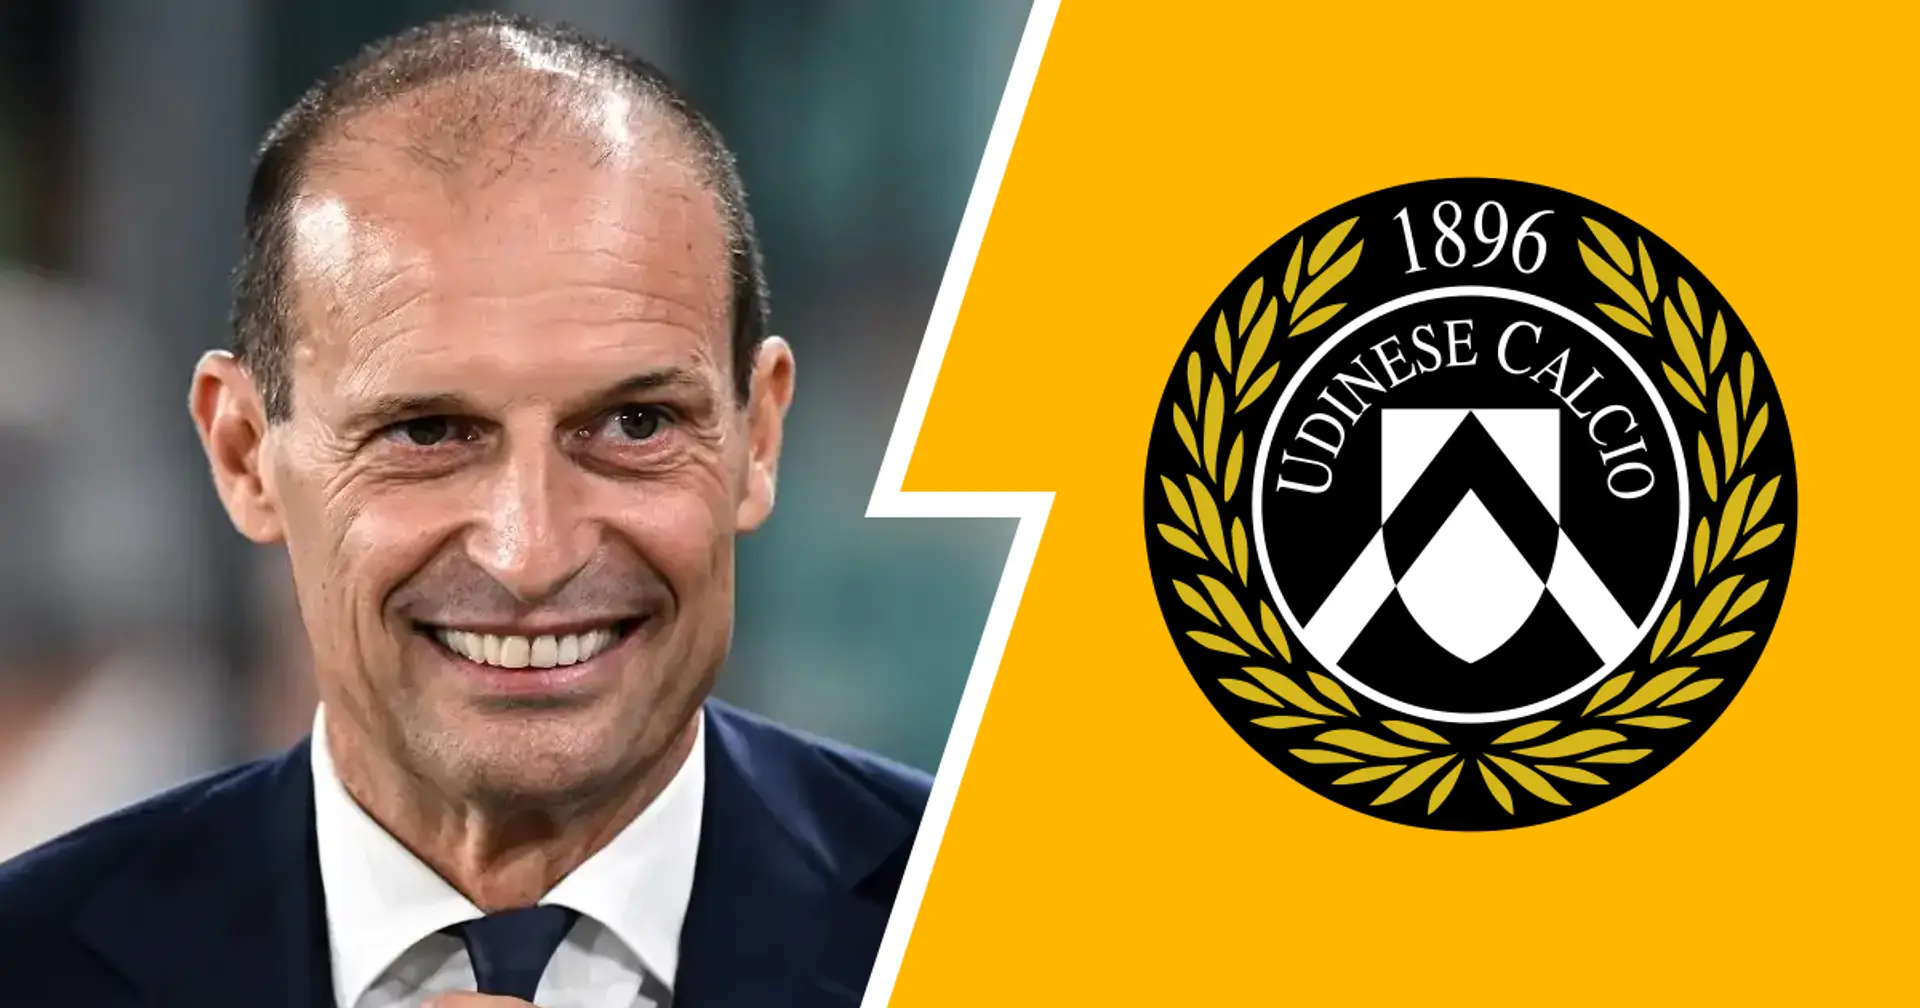 FLASH| Un titolarissimo della Juventus dà forfait contro l'Udinese